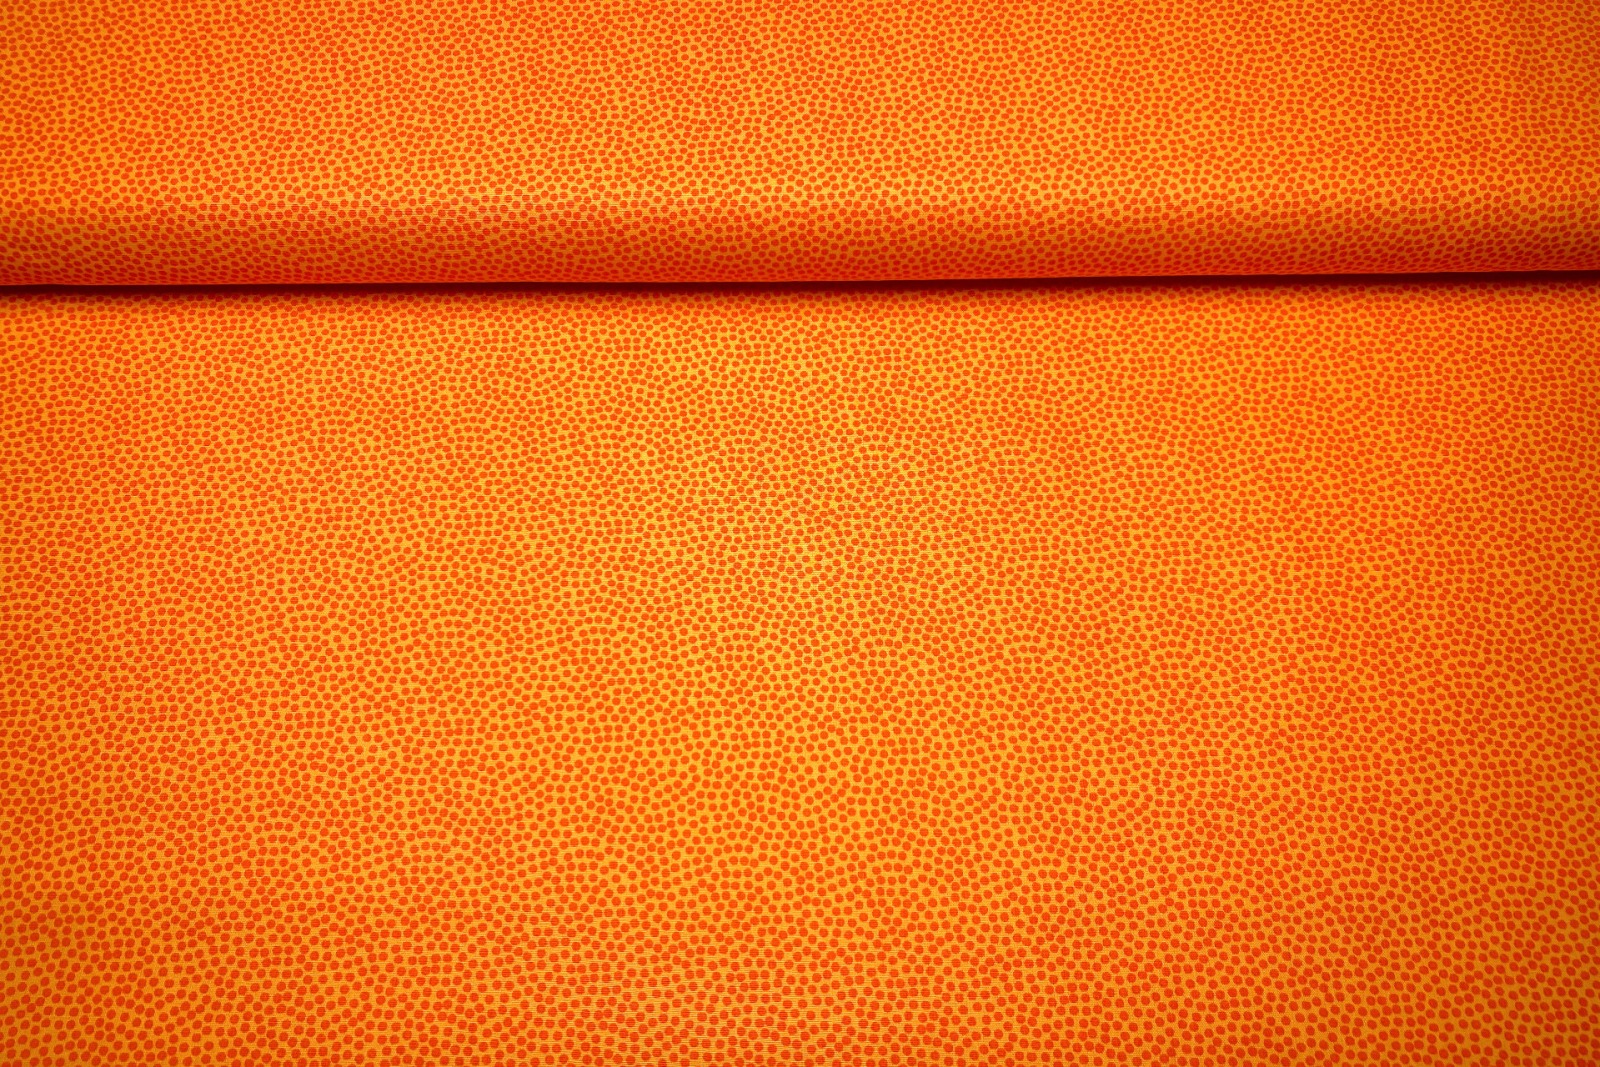 Baumwollwebware - unregelmäßige Punkte - gelb/orange - 100% Baumwolle - Dotty - Swafing 2